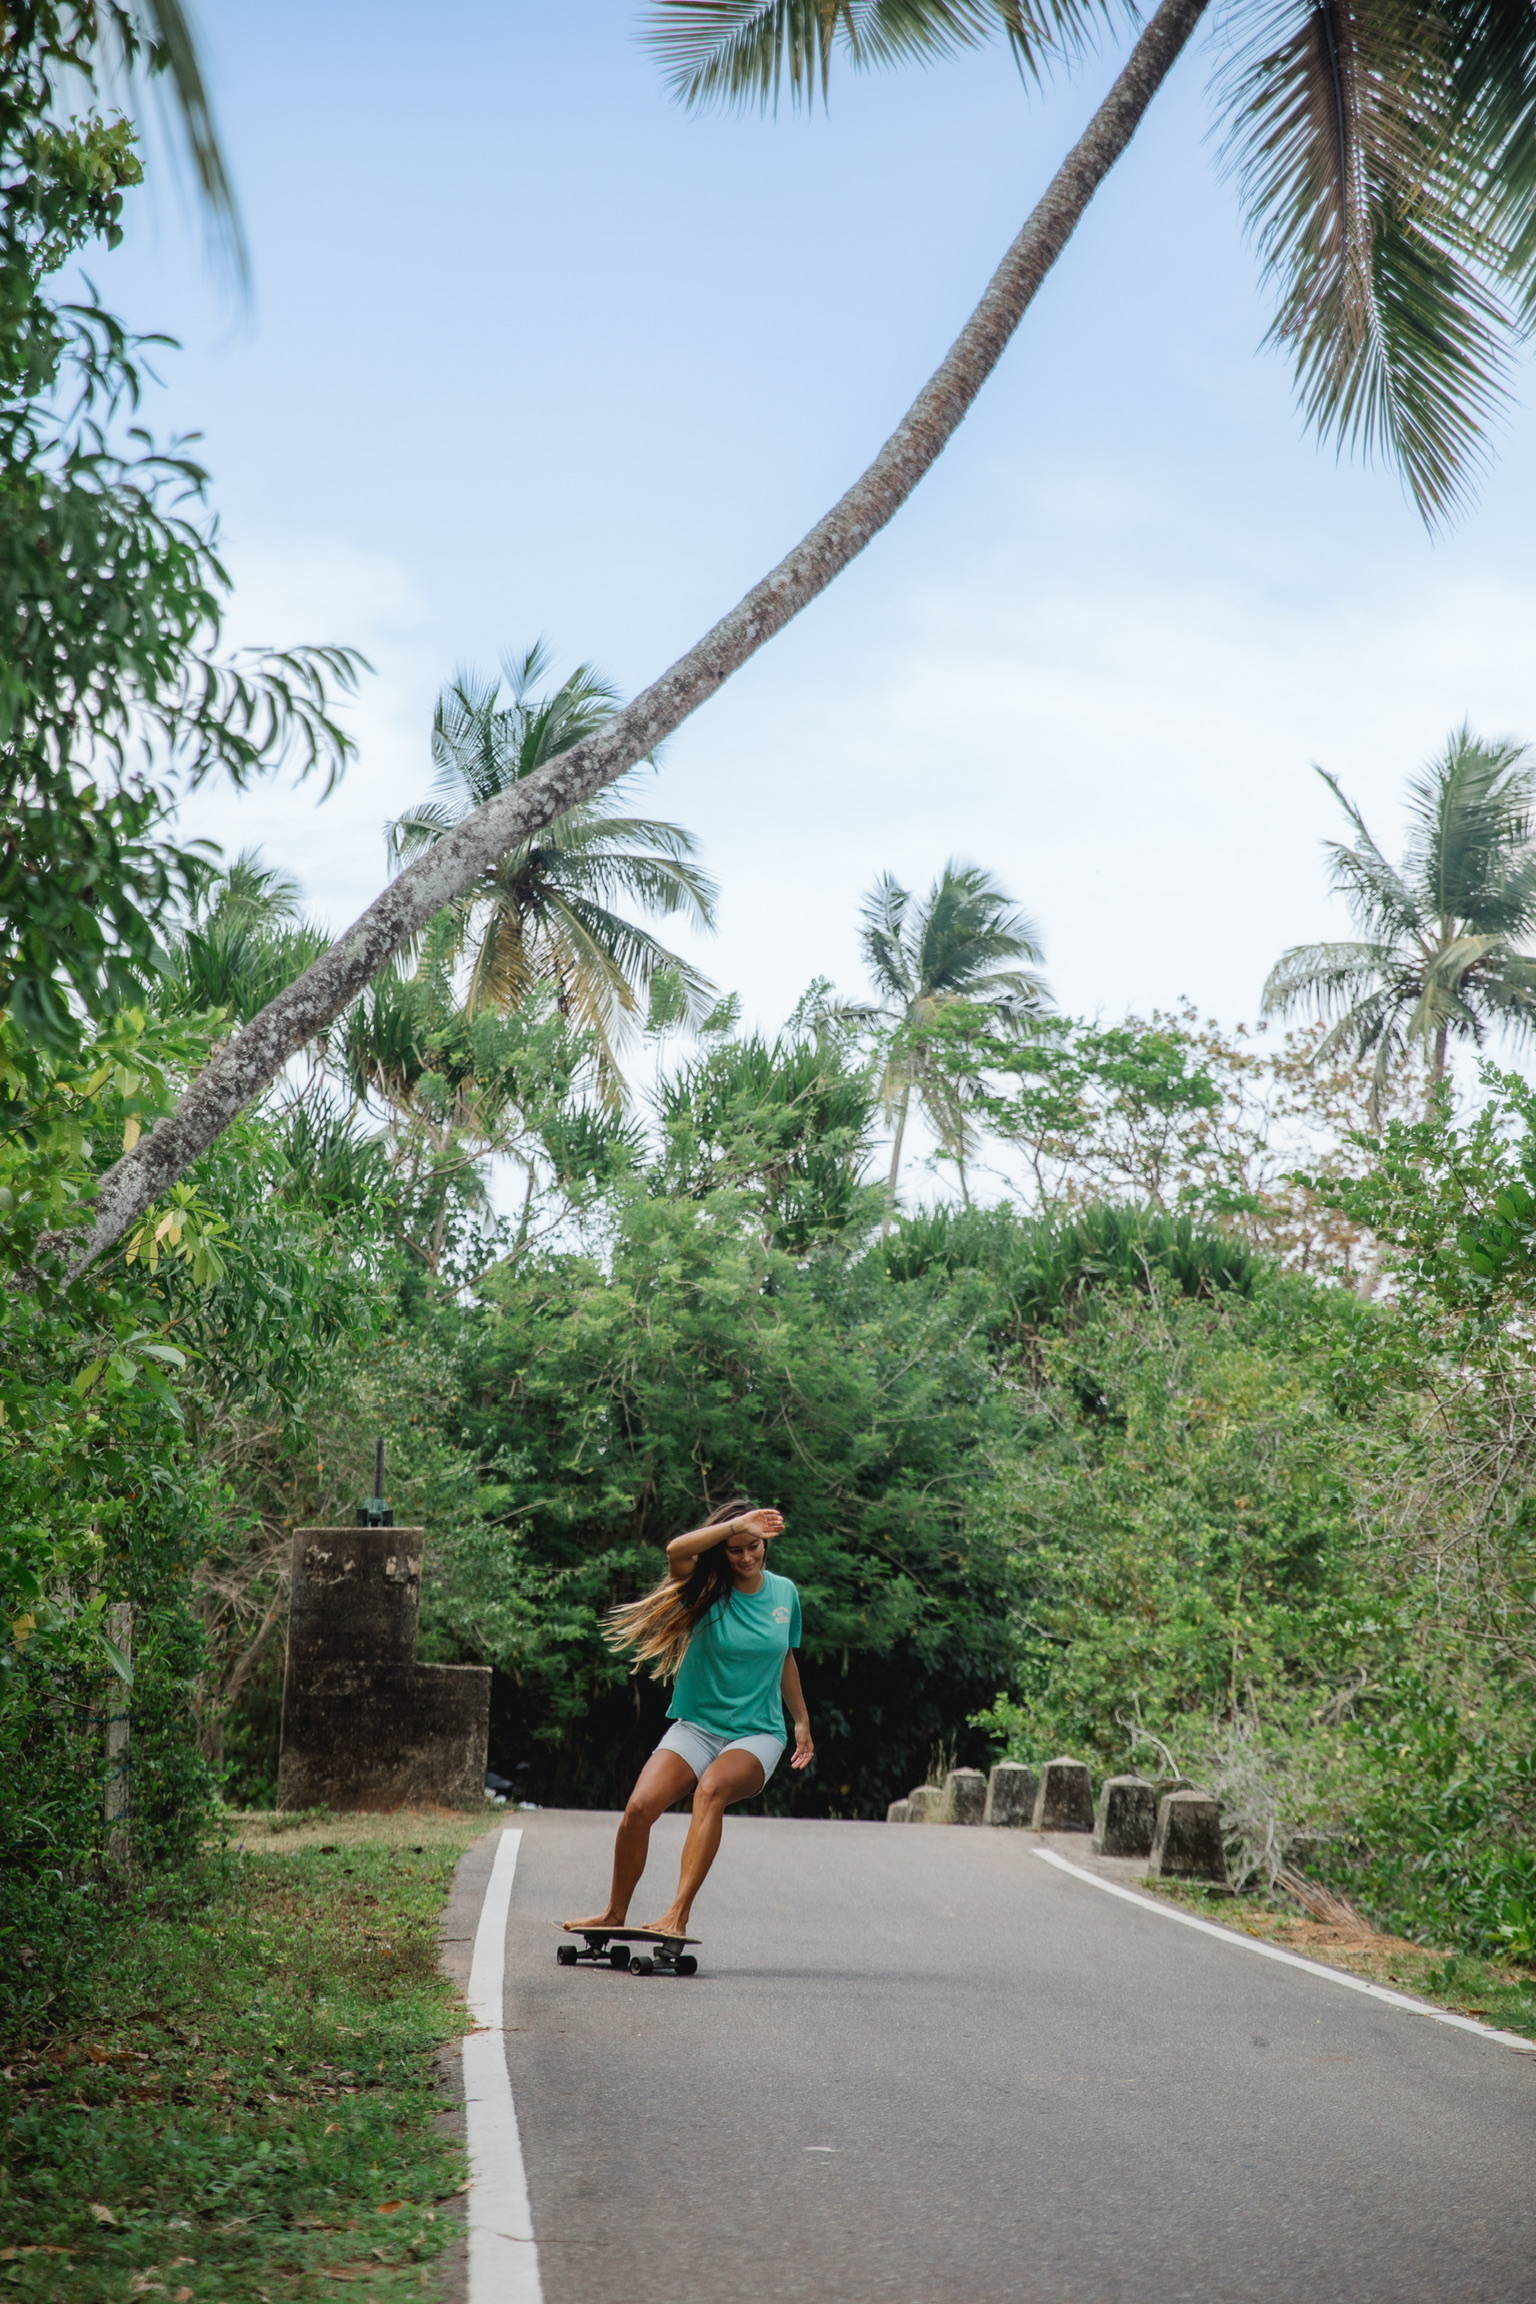 A woman skateboarding in Sri Lanka